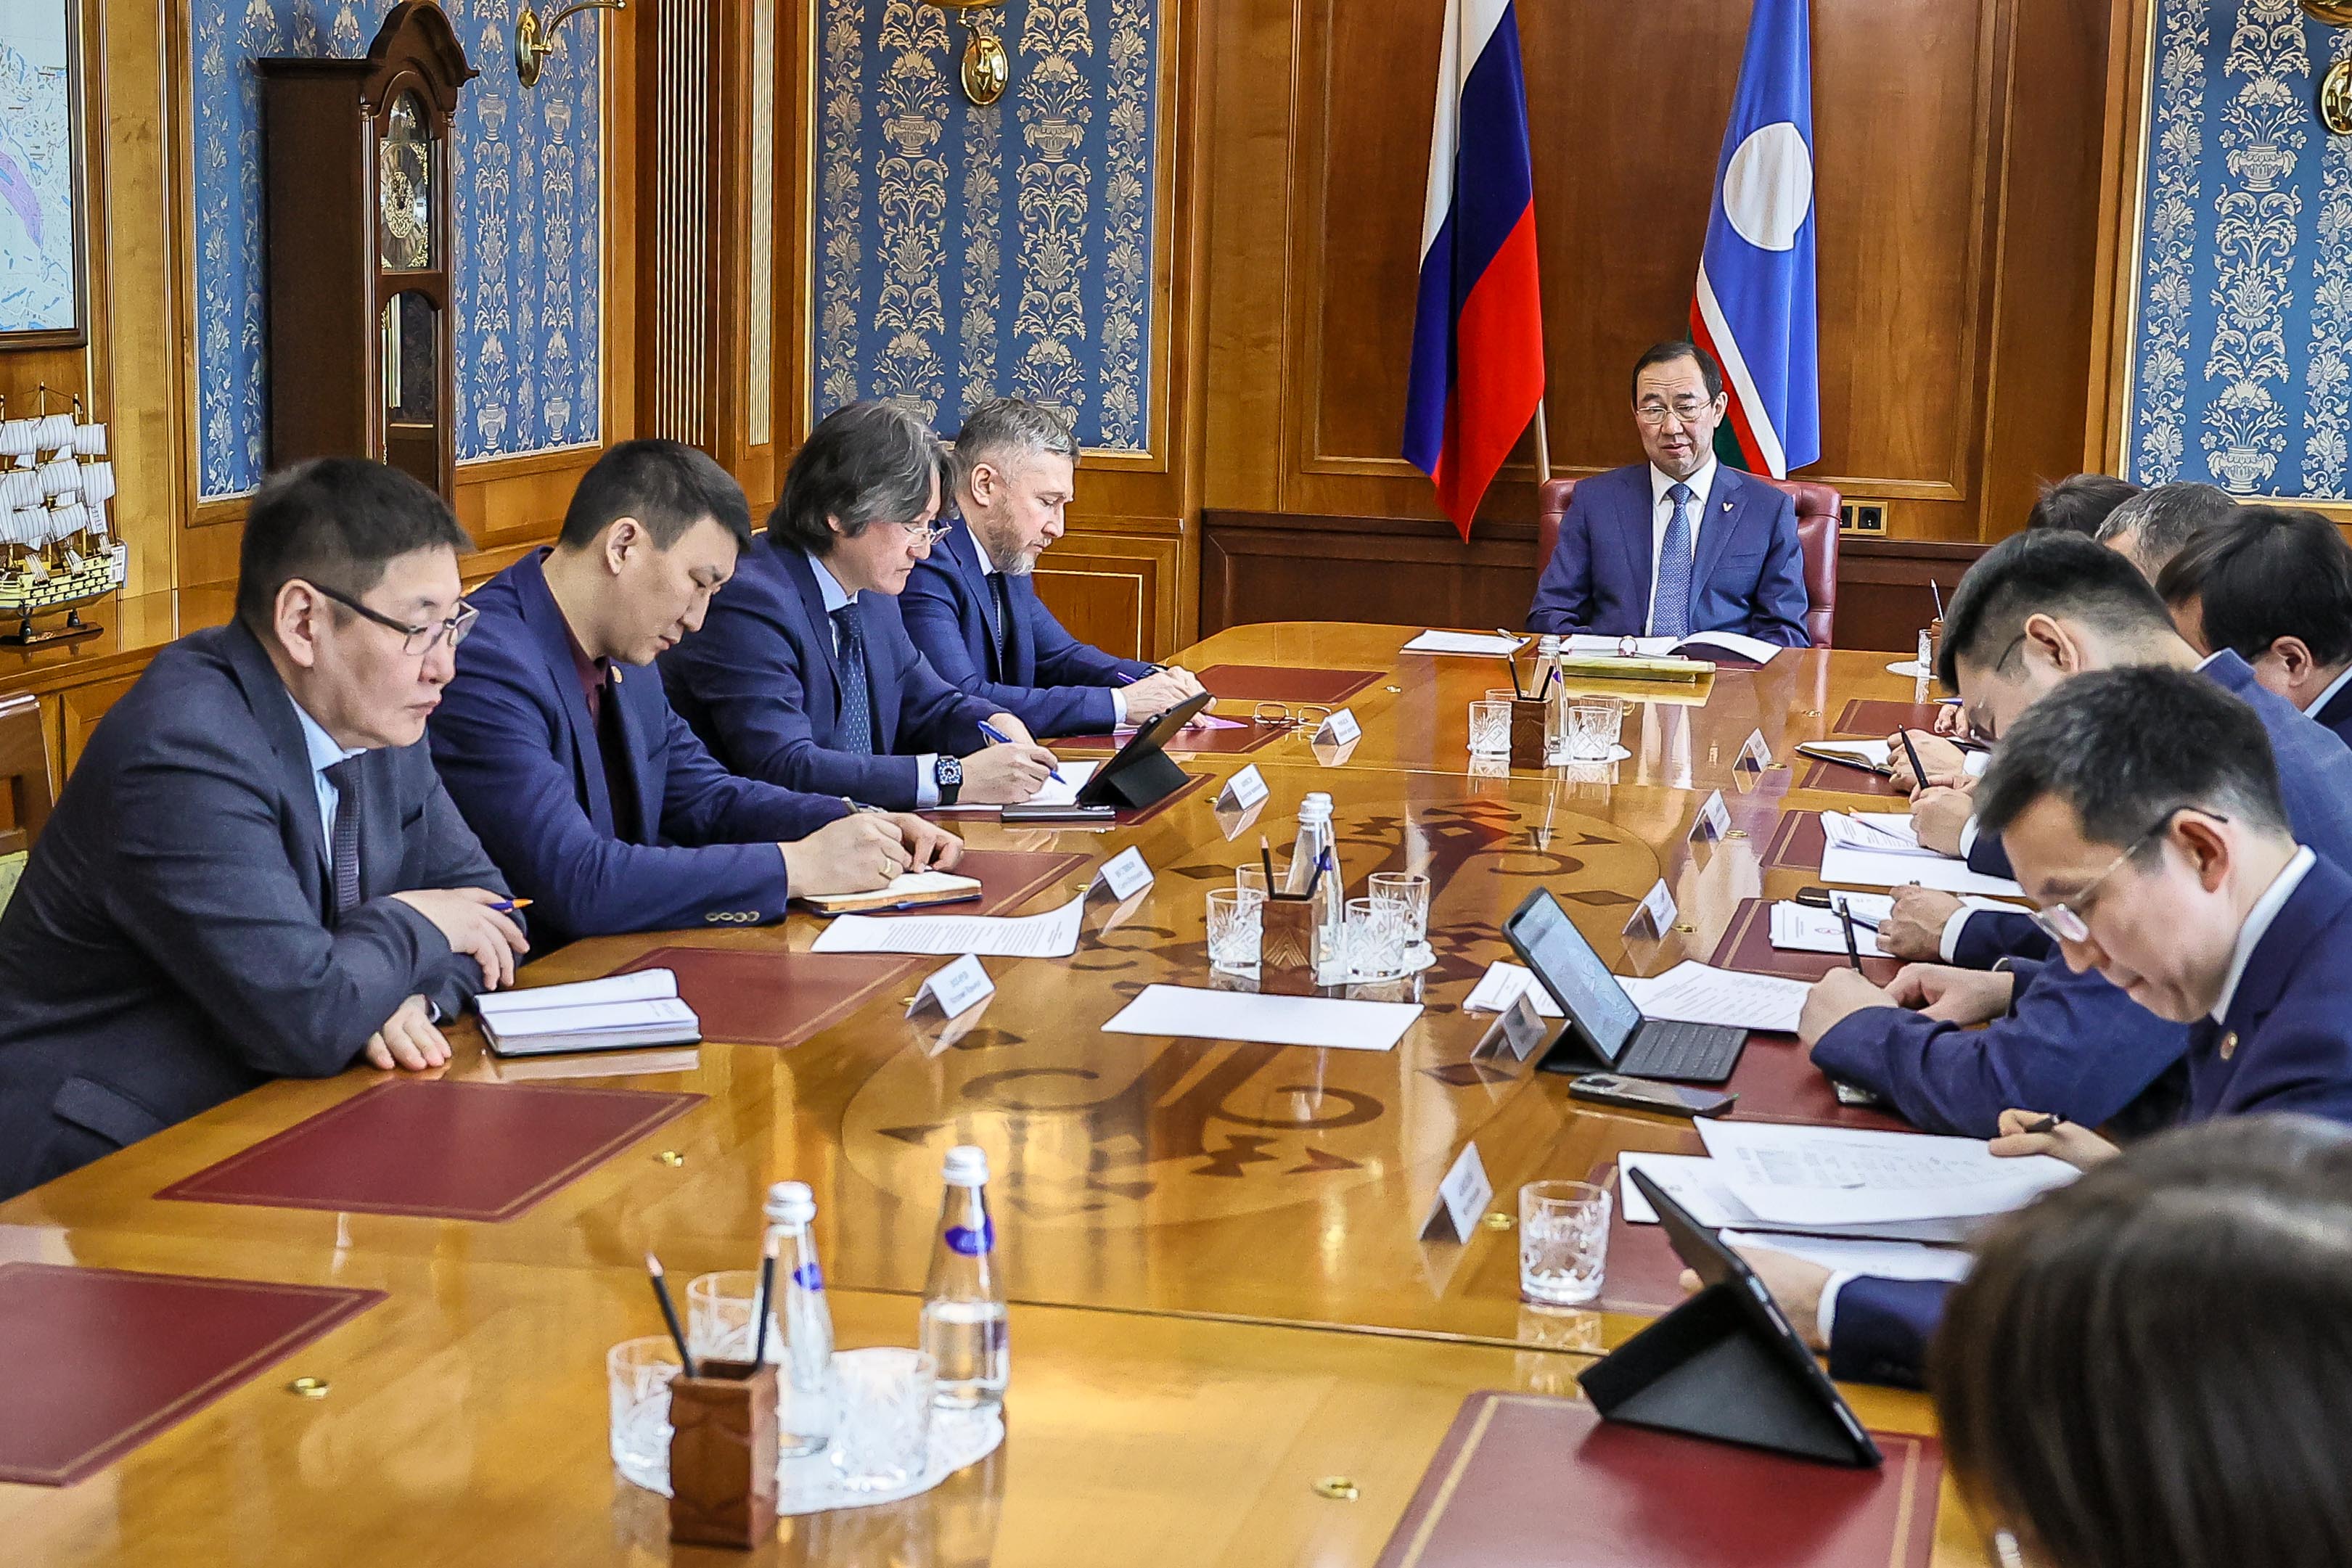 Айсен Николаев провел планерное совещание с руководством Правительства и Администрации Якутии